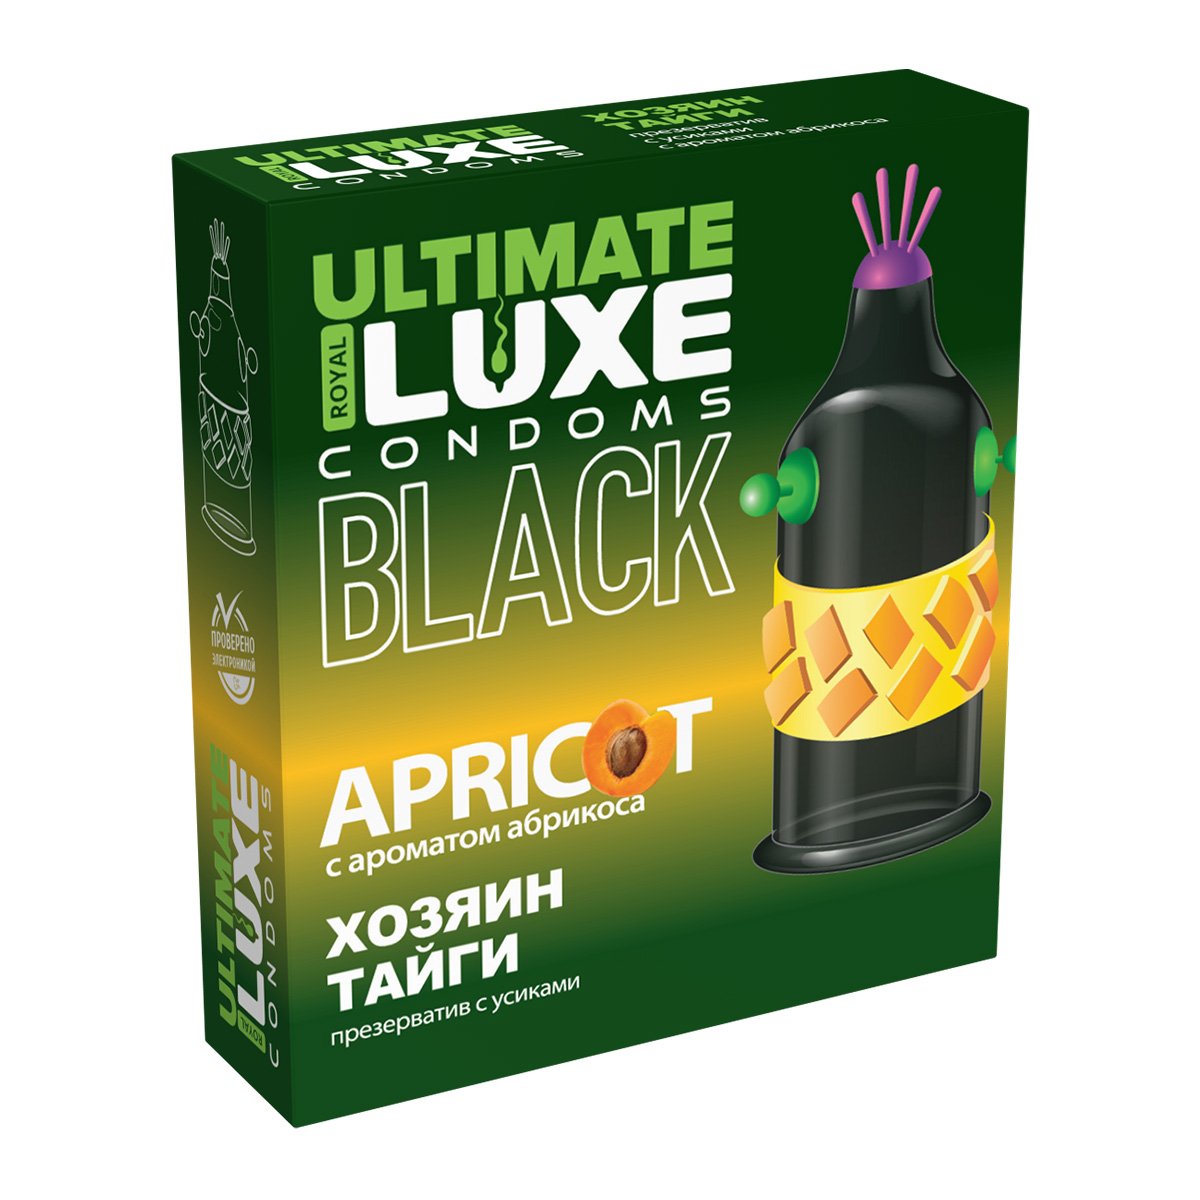 Эксклюзивный черный презерватив Luxe EXTREME BLACK   ХОЗЯИН ТАЙГИ (АБРИКОС) , 1 шт.